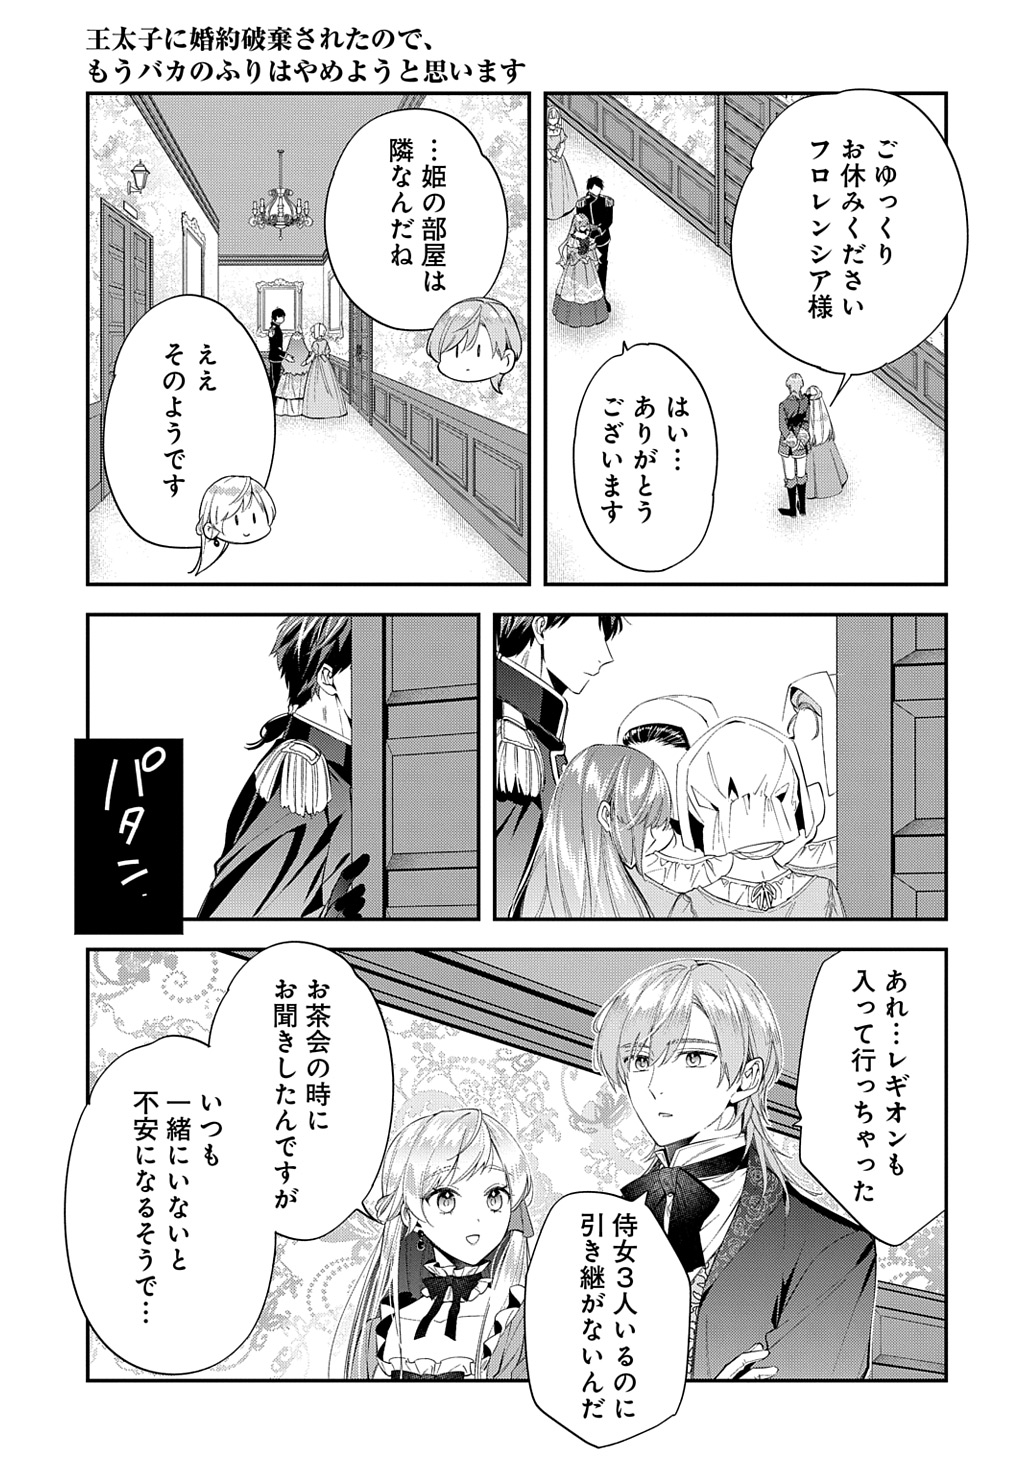 Outaishi ni Konyaku Hakisareta no de, Mou Baka no Furi wa Yameyou to Omoimasu - Chapter 23 - Page 15